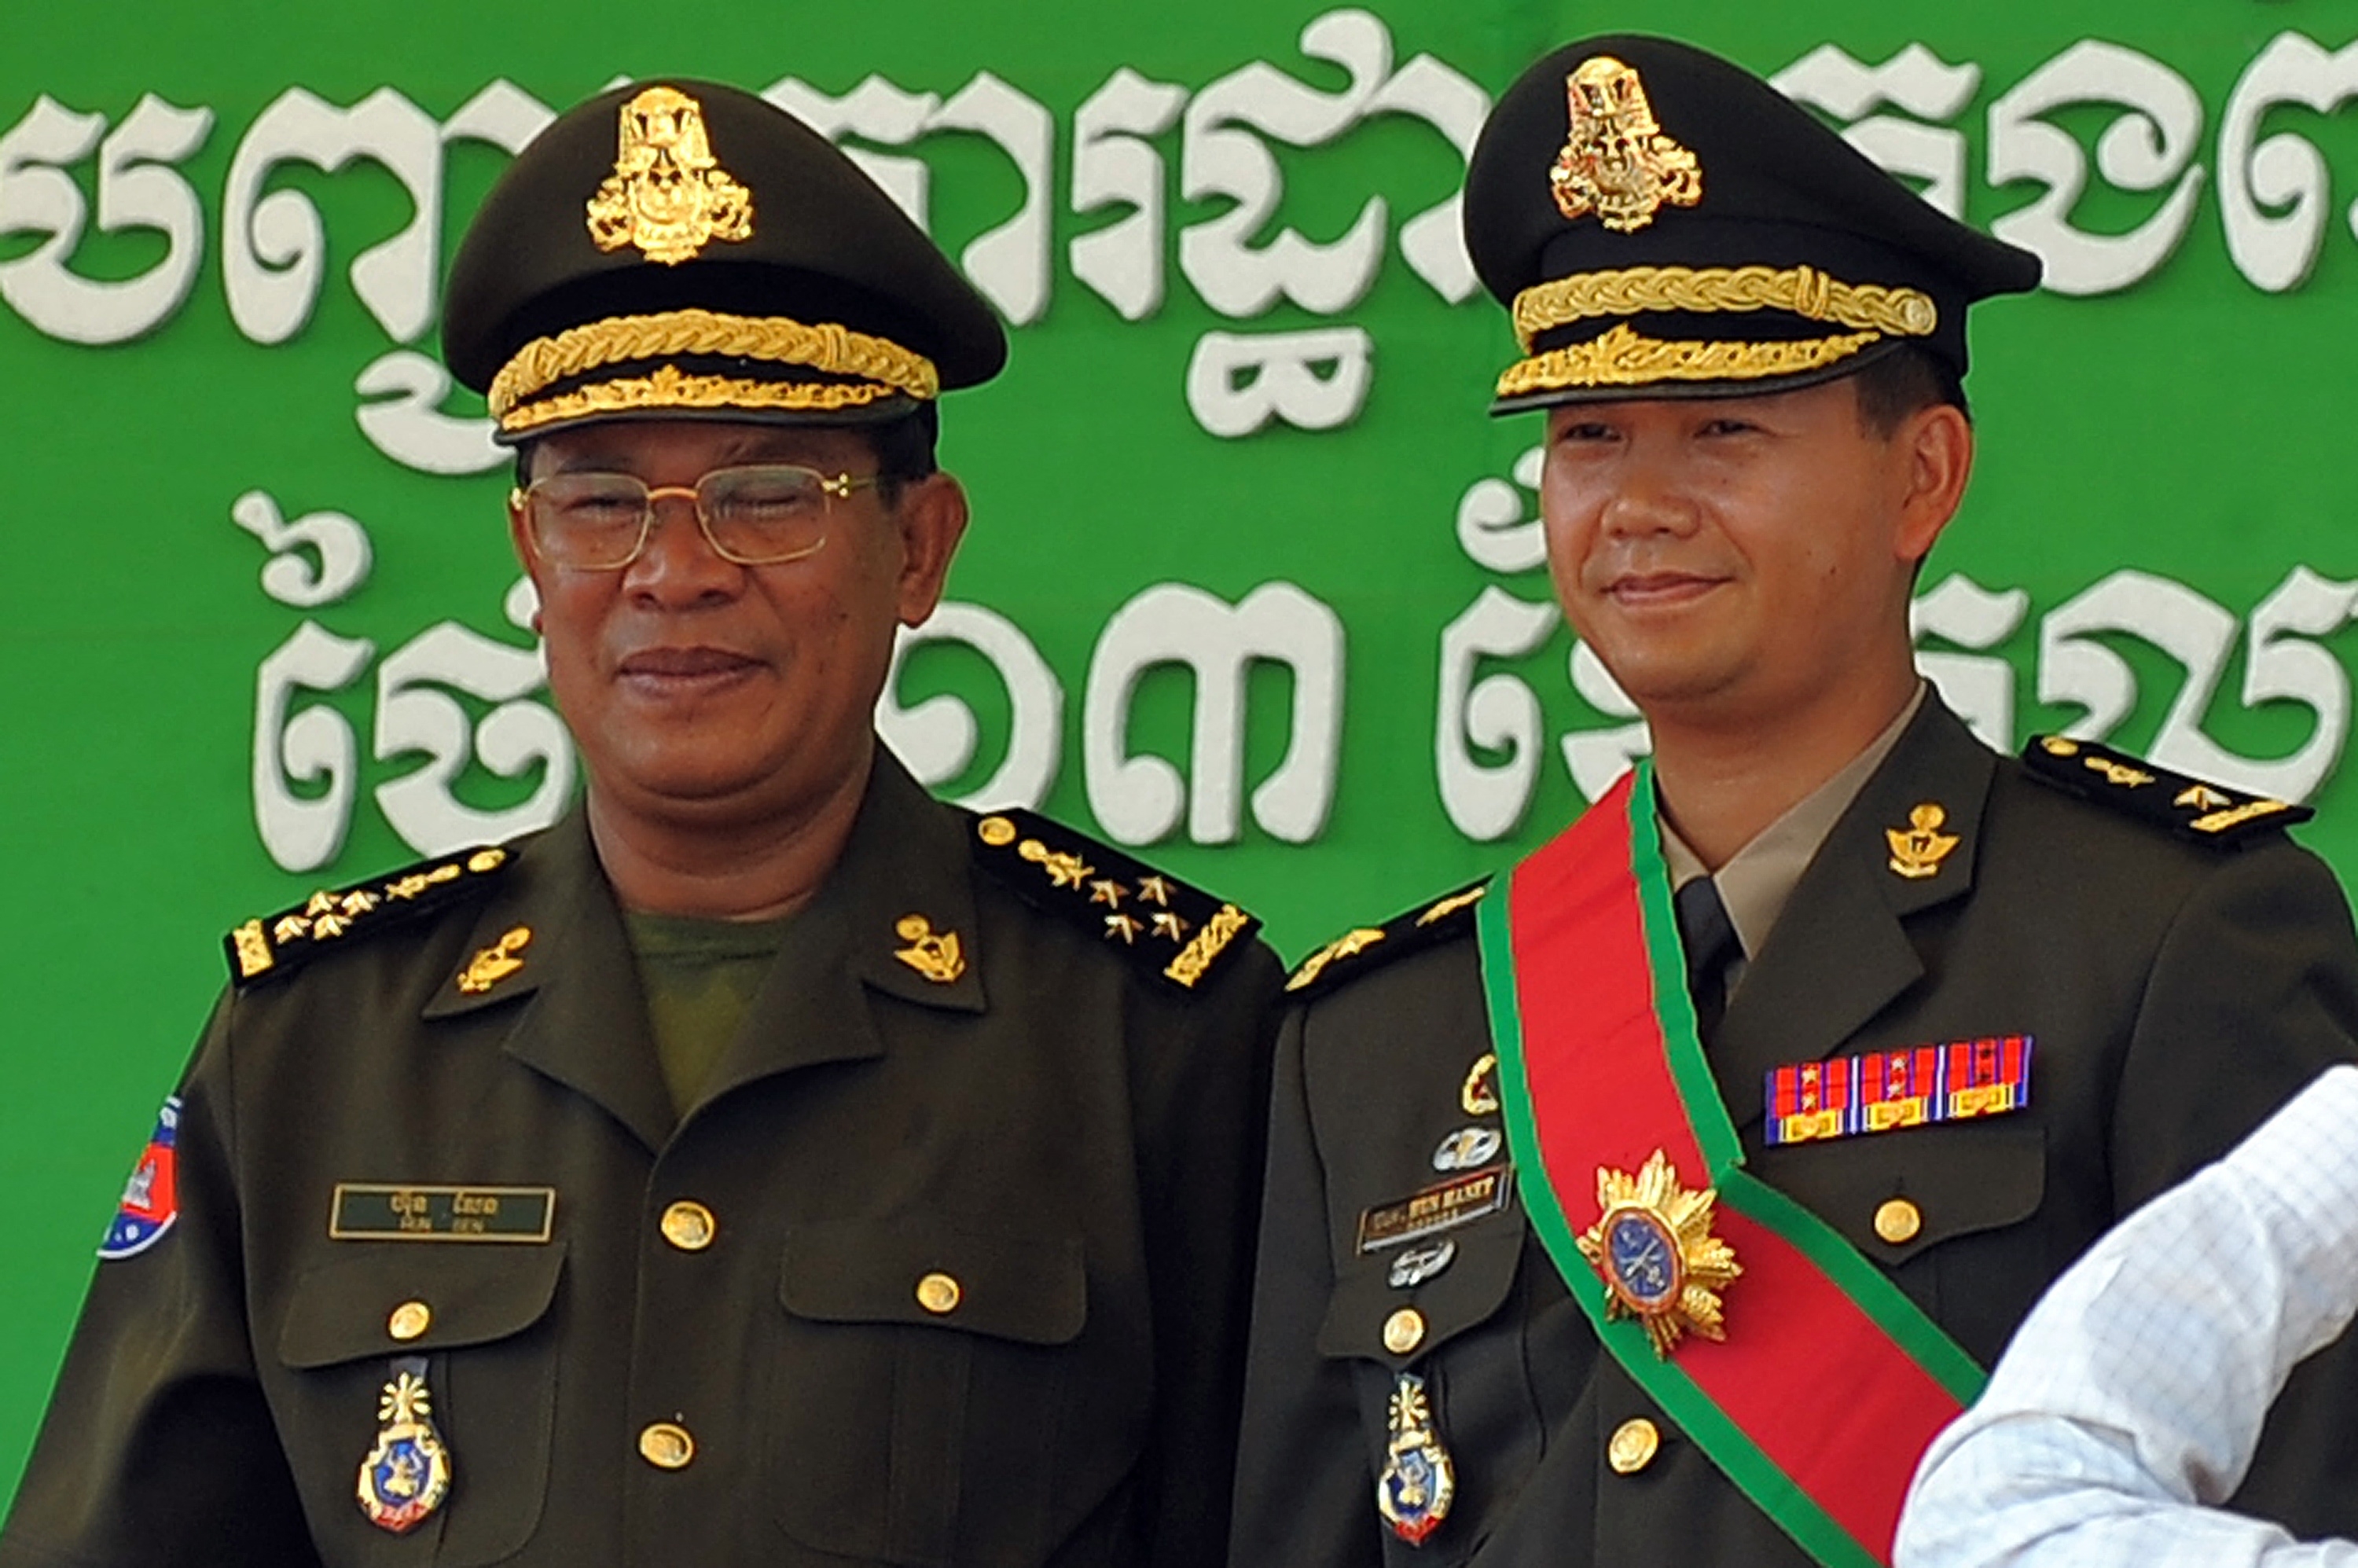 훈 센(왼쪽) 캄보디아 총리와 장남 훈 마네트 차기 총리가 2009년 10월 프놈펜 행사에서 군복을 입은 채 나란히 포즈를 취하고 있다. 프놈펜 AFP 연합뉴스